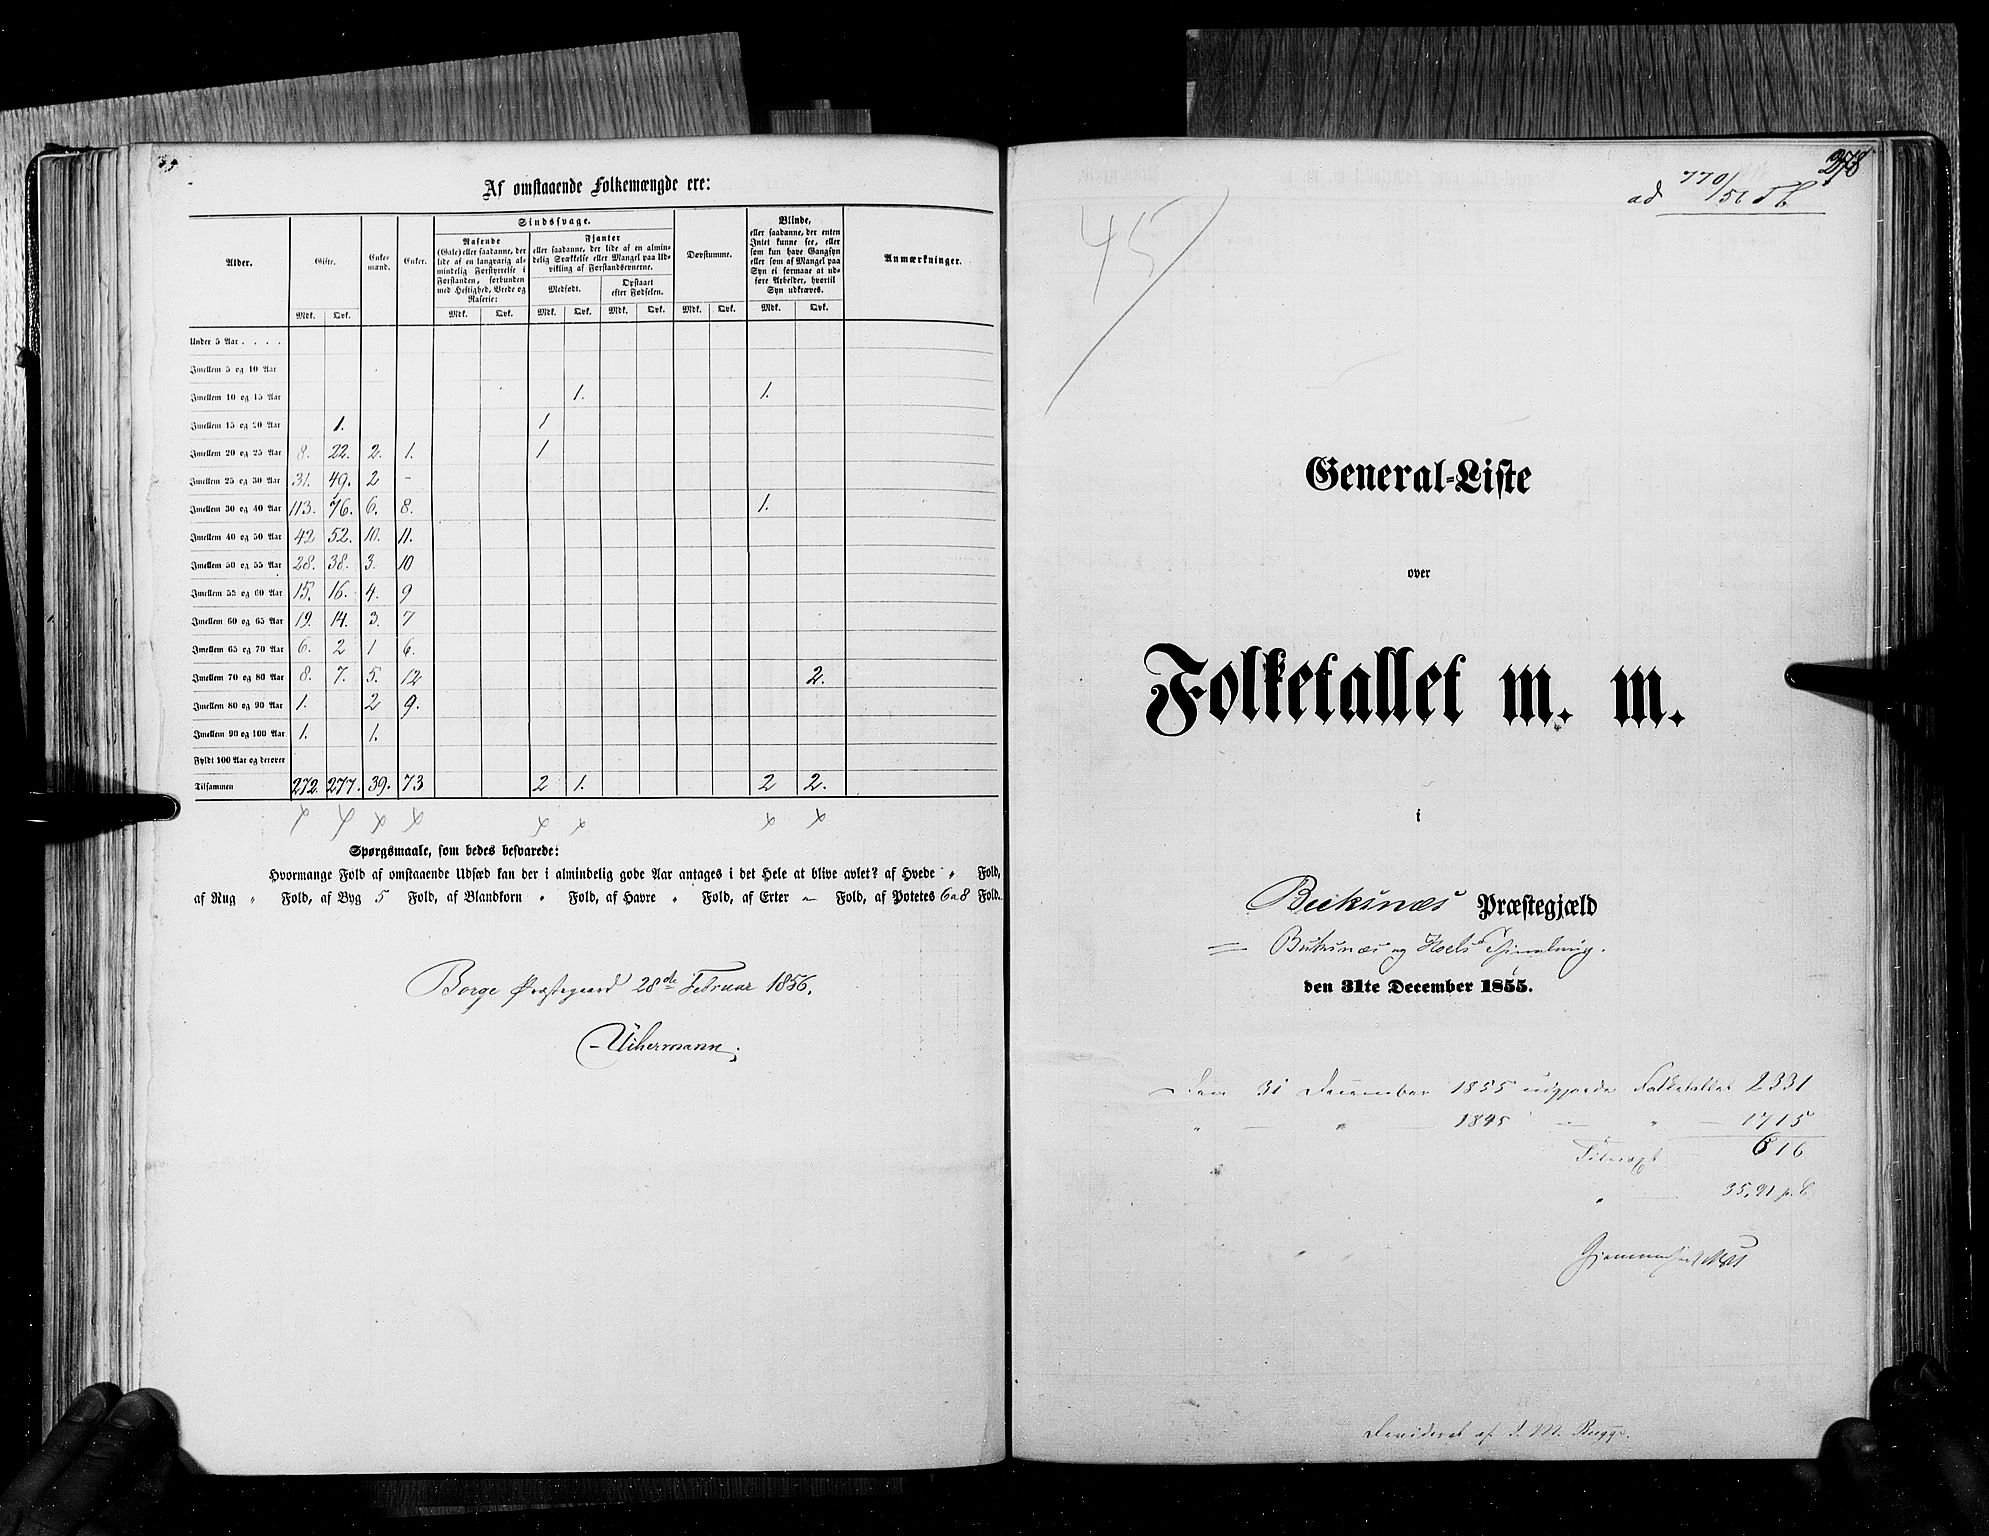 RA, Folketellingen 1855, bind 6B: Nordland amt og Finnmarken amt, 1855, s. 278